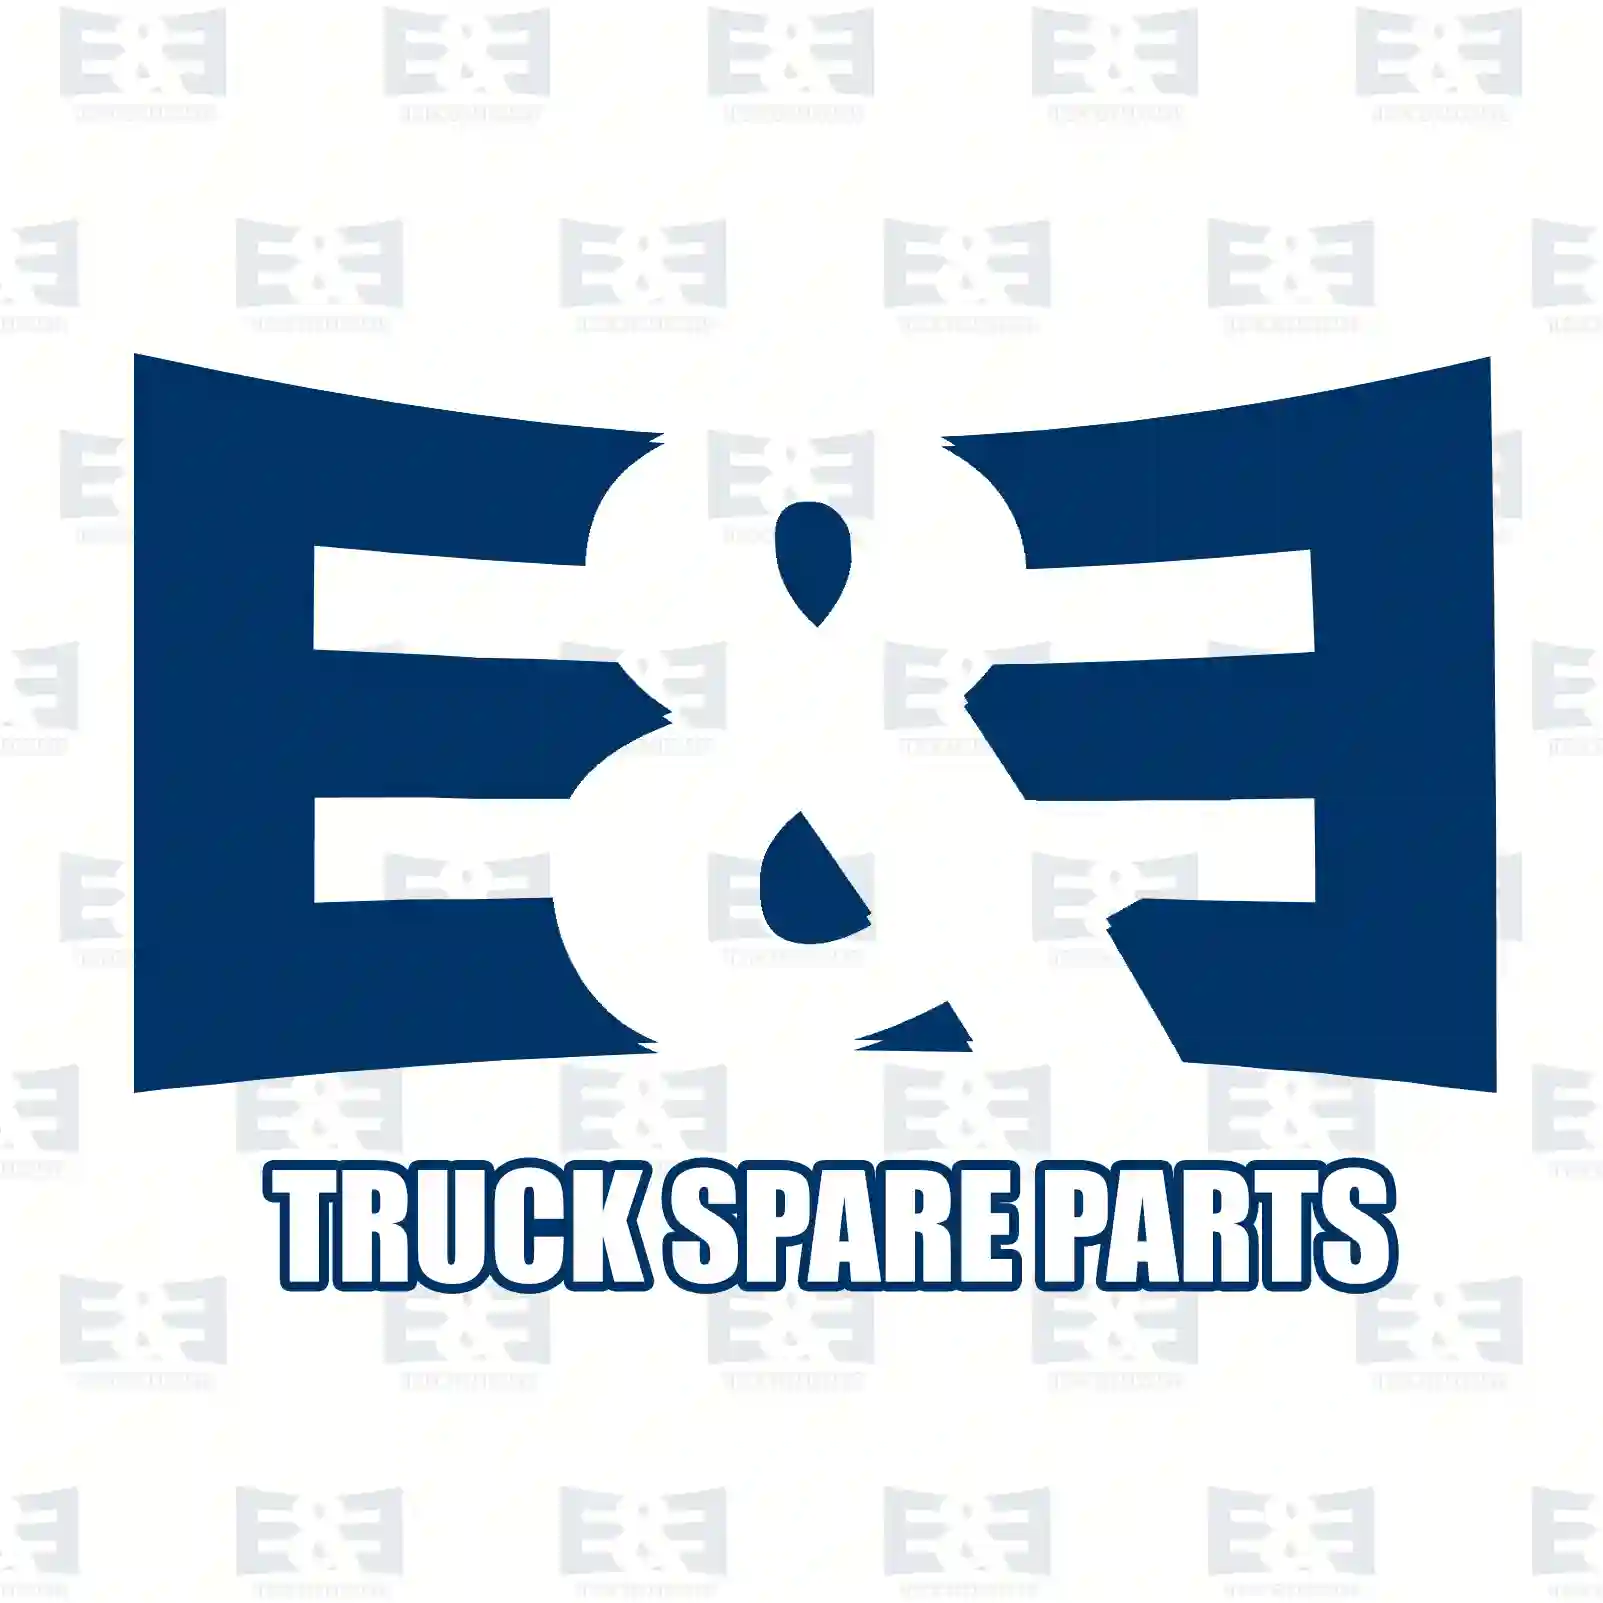  Exhaust Gas Recirculation Valve, exhaust gas recirculation, EE No 2E2200403 ,  oem no:1148330, 1151774, 1333574, 1446265, 2S7Q-9D475-BA, 2S7Q-9D475-BB, 2S7Q-9D475-BC, 2S7Q-9D475-BD, 14941, EGR101, ERV005 E&E Truck Spare Parts | Truck Spare Parts, Auotomotive Spare Parts